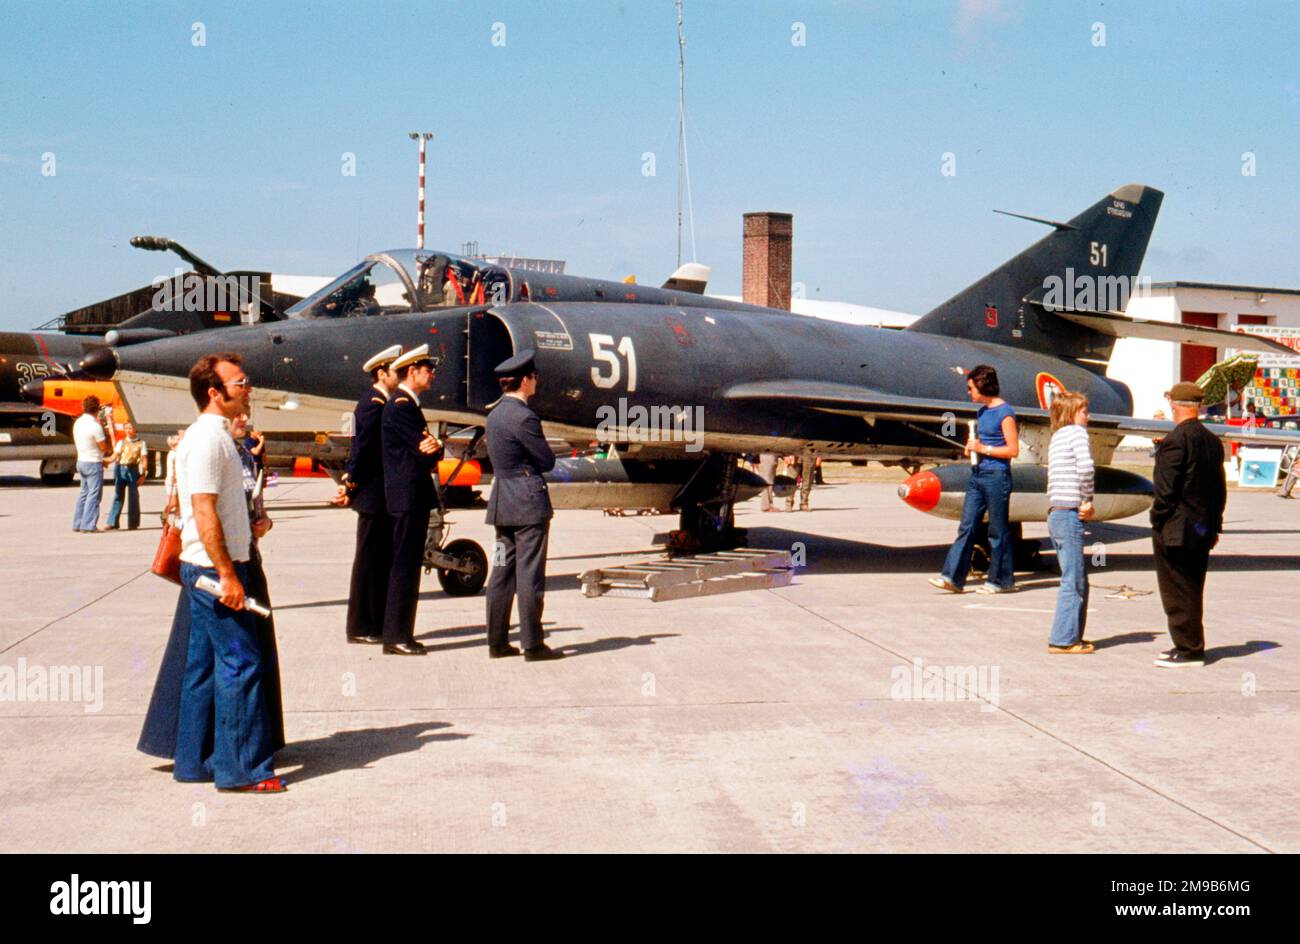 Aeronavale - Dassault Etendard iVM 51 (msn 051), de 11 Flotille, à la Royal Naval Air Station Yeovilton le 6 septembre 1975. (Aéronautique - Aéronautique navale - Aviation navale française) Banque D'Images